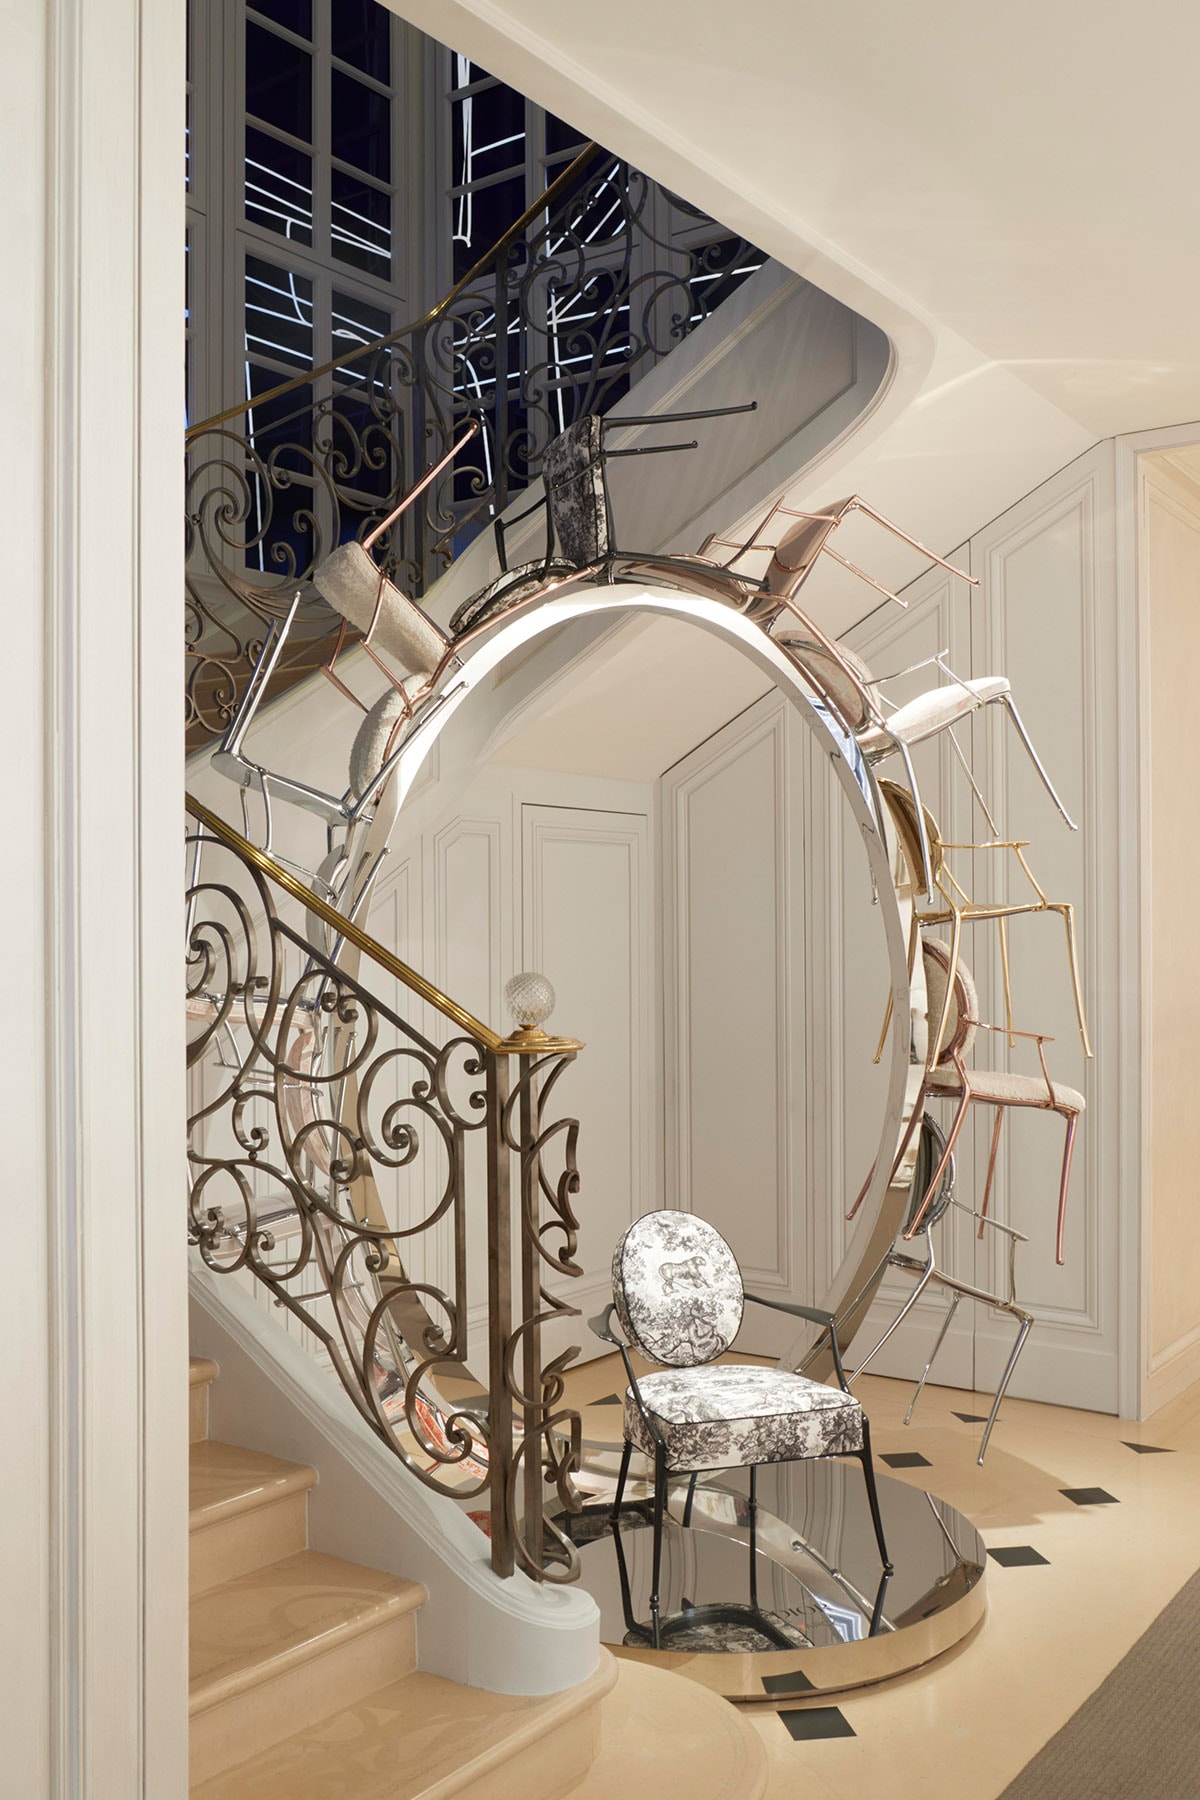 近賞 Philippe Starck 設計最新 Monsieur Dior 扶手椅與家飾系列